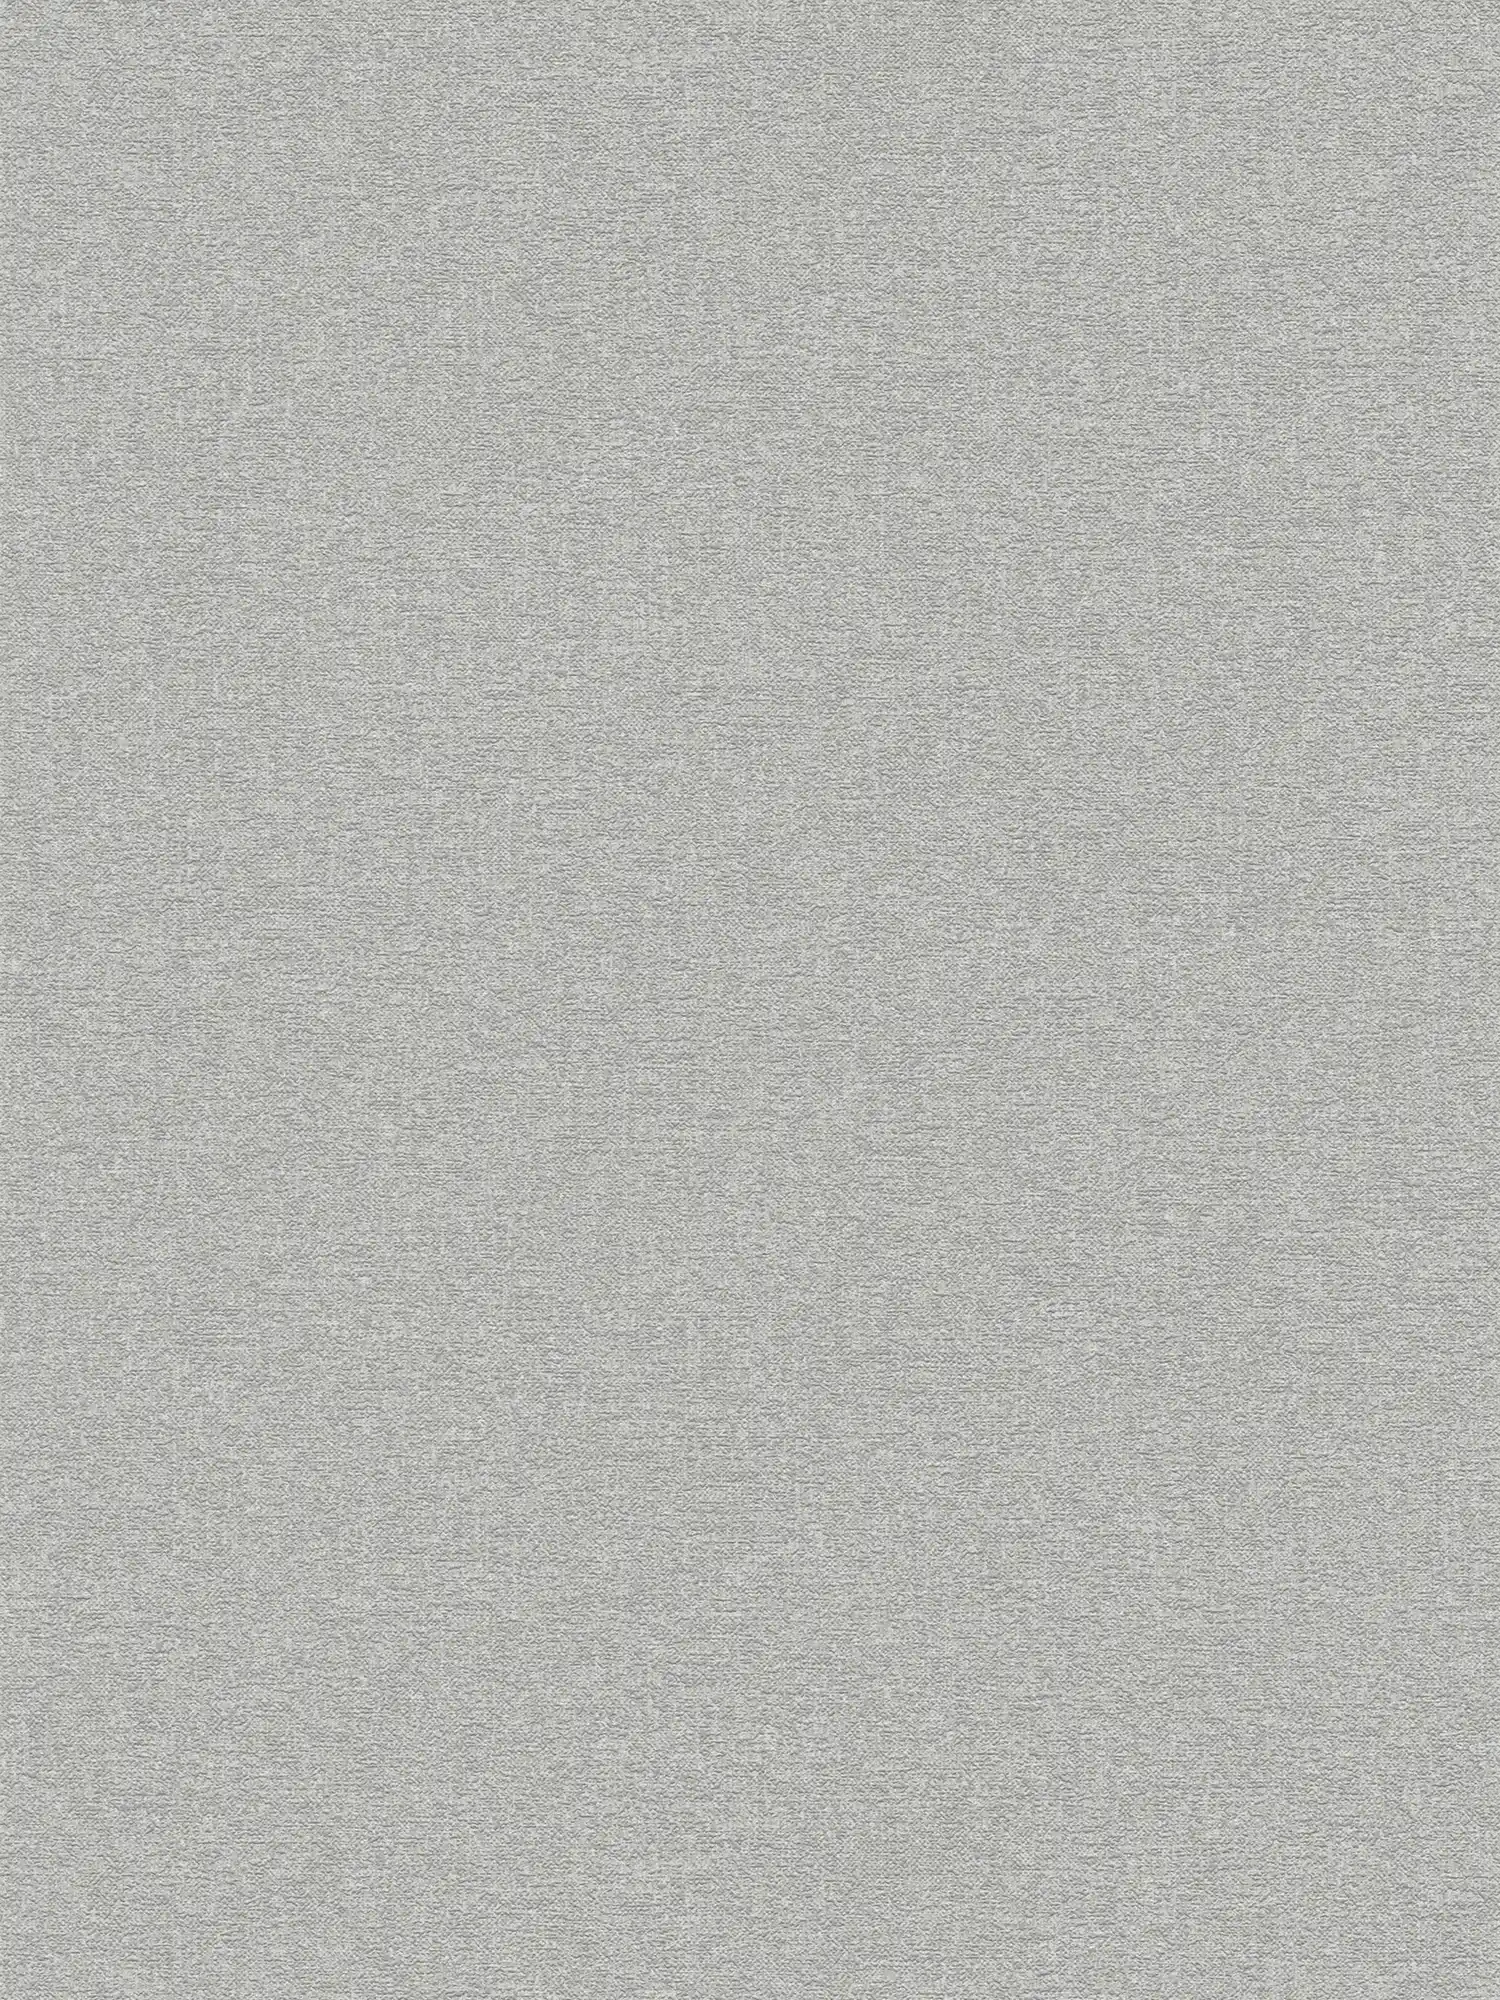 Vliestapete einfarbig mit leichten Strukturmuster – Grau
